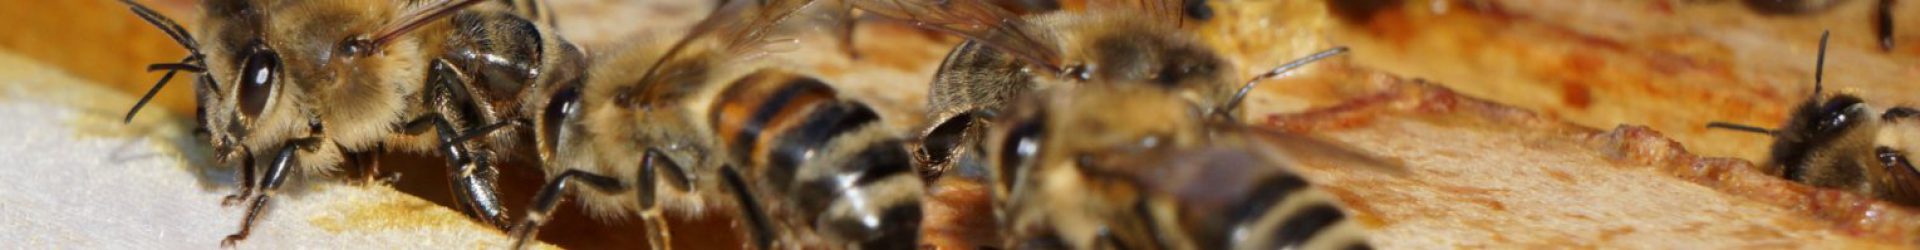 Aktualisiert: Hoffnung für alle Imker – Veitshöchheimer Bienenexperten finden Mittel gegen Varroa-Milben